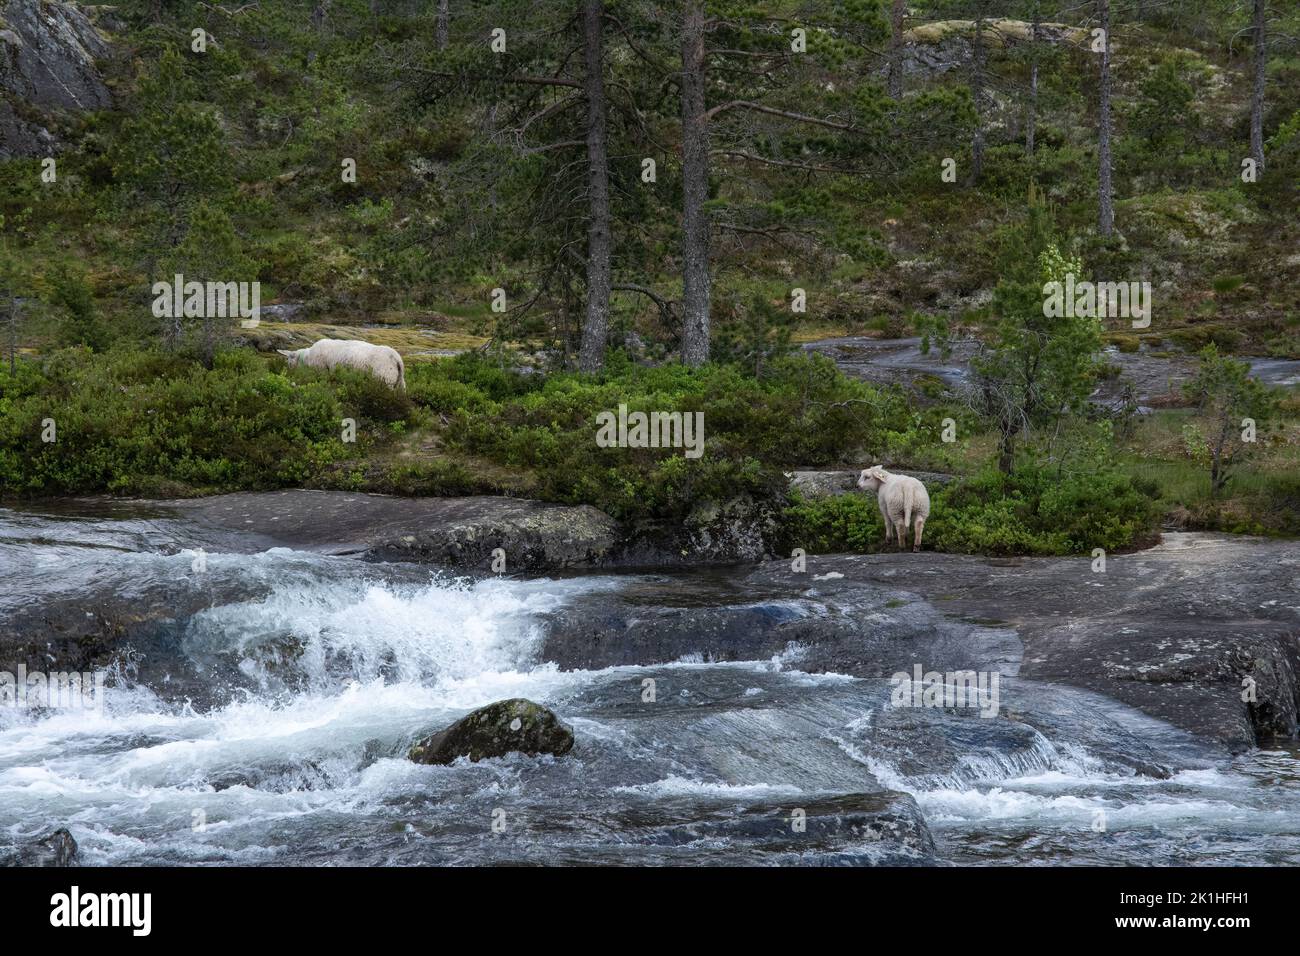 Paysages merveilleux en Norvège. Vestland. Magnifique paysage de la cascade de Likholefossen et de la rivière Eldalselva Gaula. Montagne, arbres et moutons à l'arrière Banque D'Images